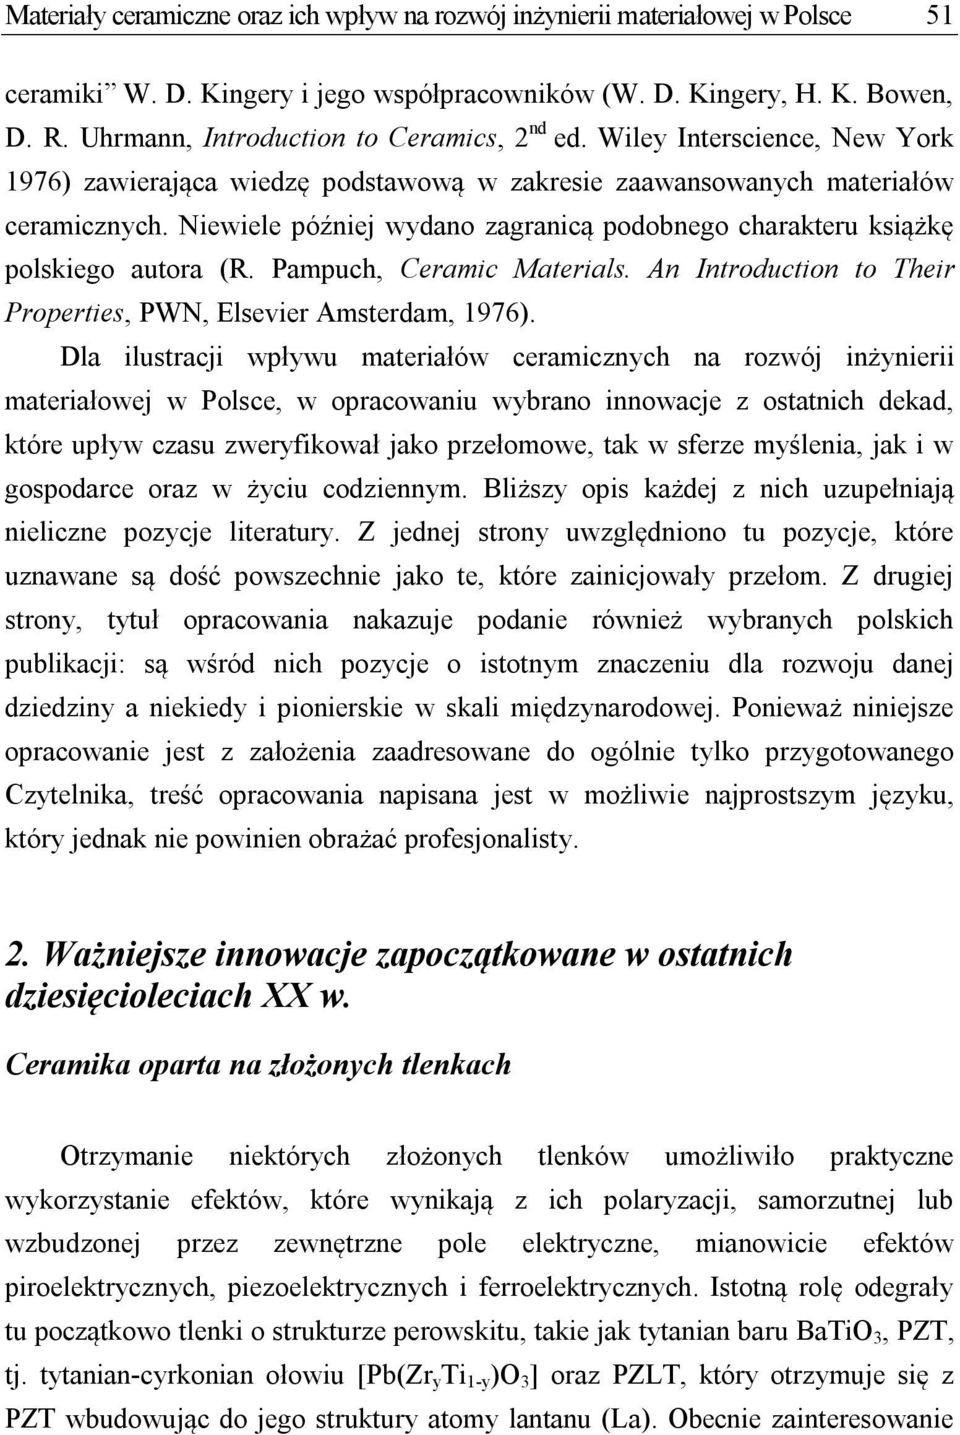 Niewiele później wydano zagranicą podobnego charakteru książkę polskiego autora (R. Pampuch, Ceramic Materials. An Introduction to Their Properties, PWN, Elsevier Amsterdam, 1976).